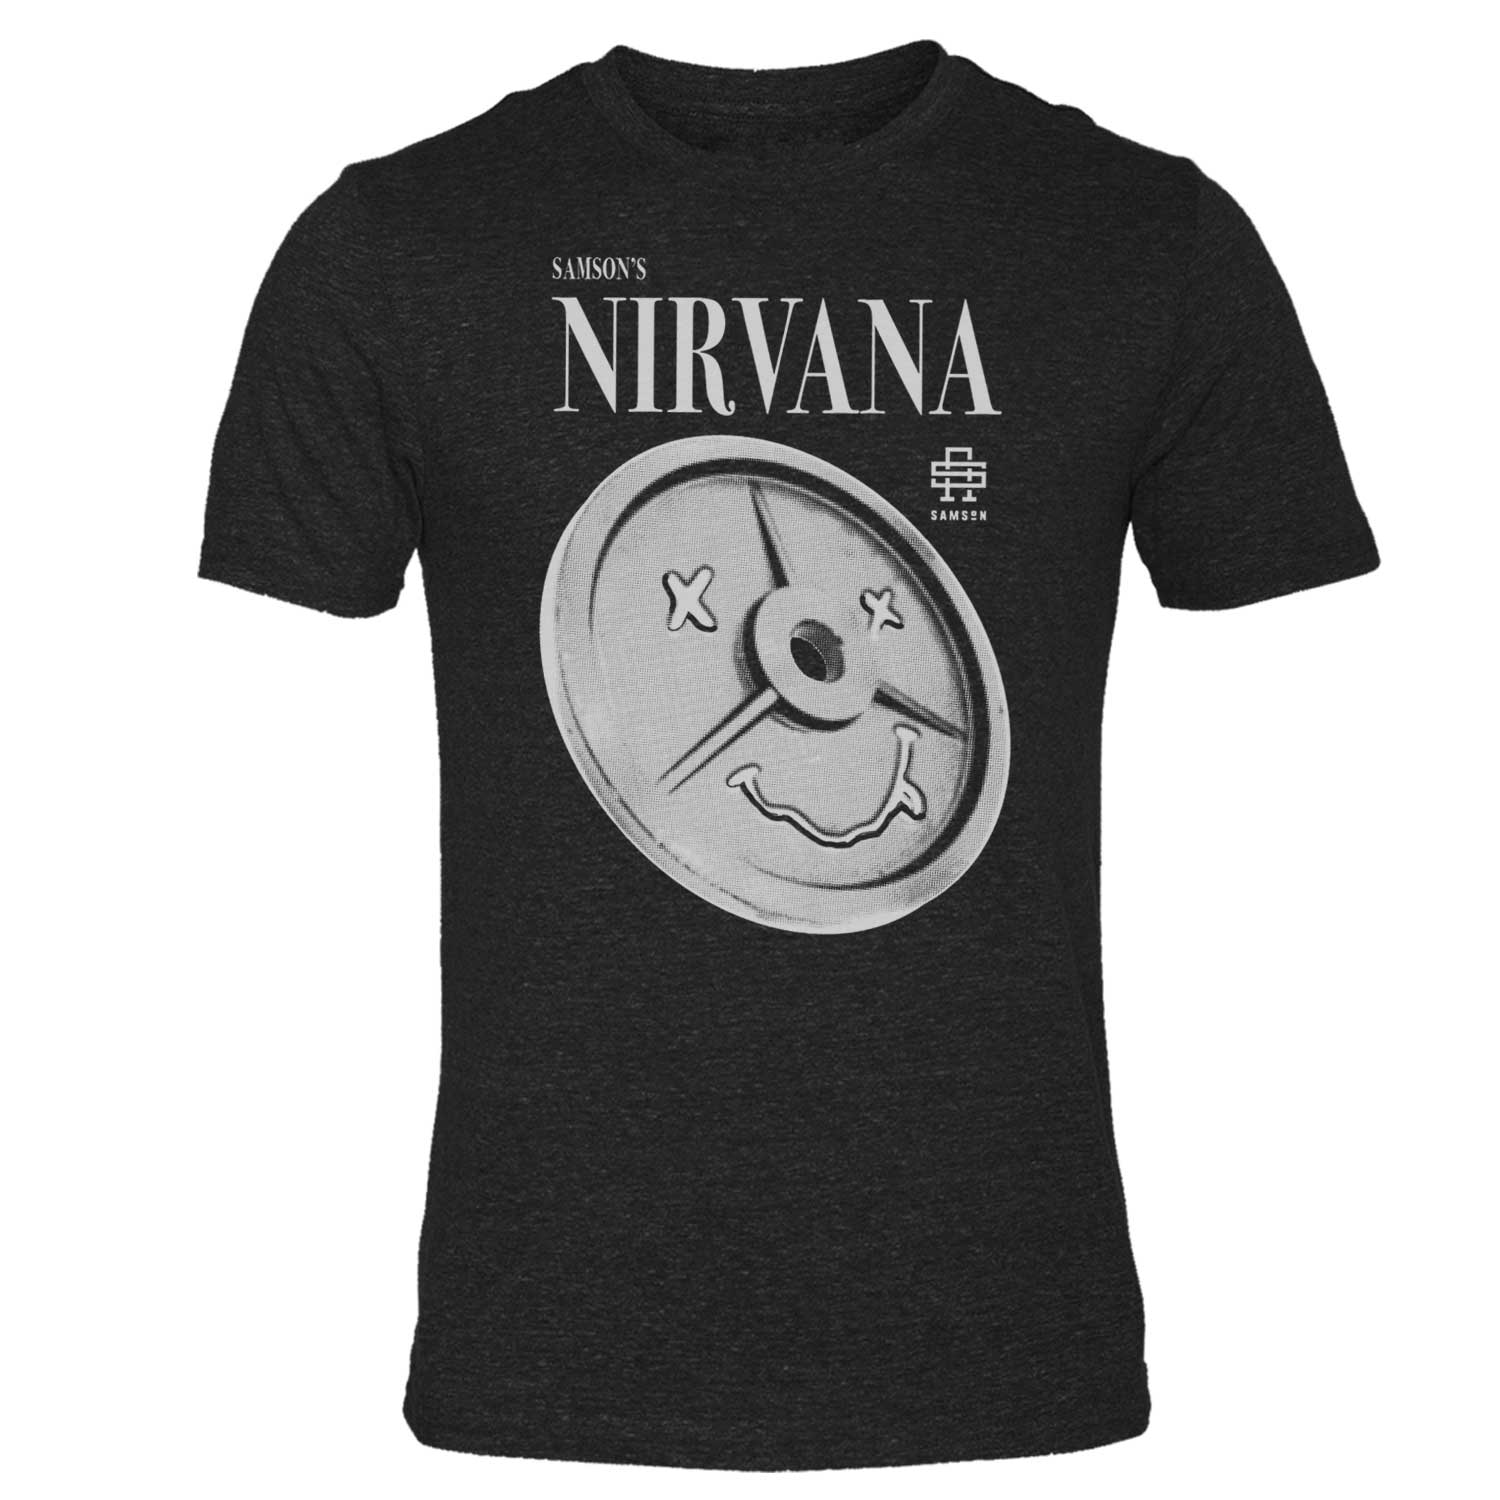 Samson's Nirvana Gym T-Shirt